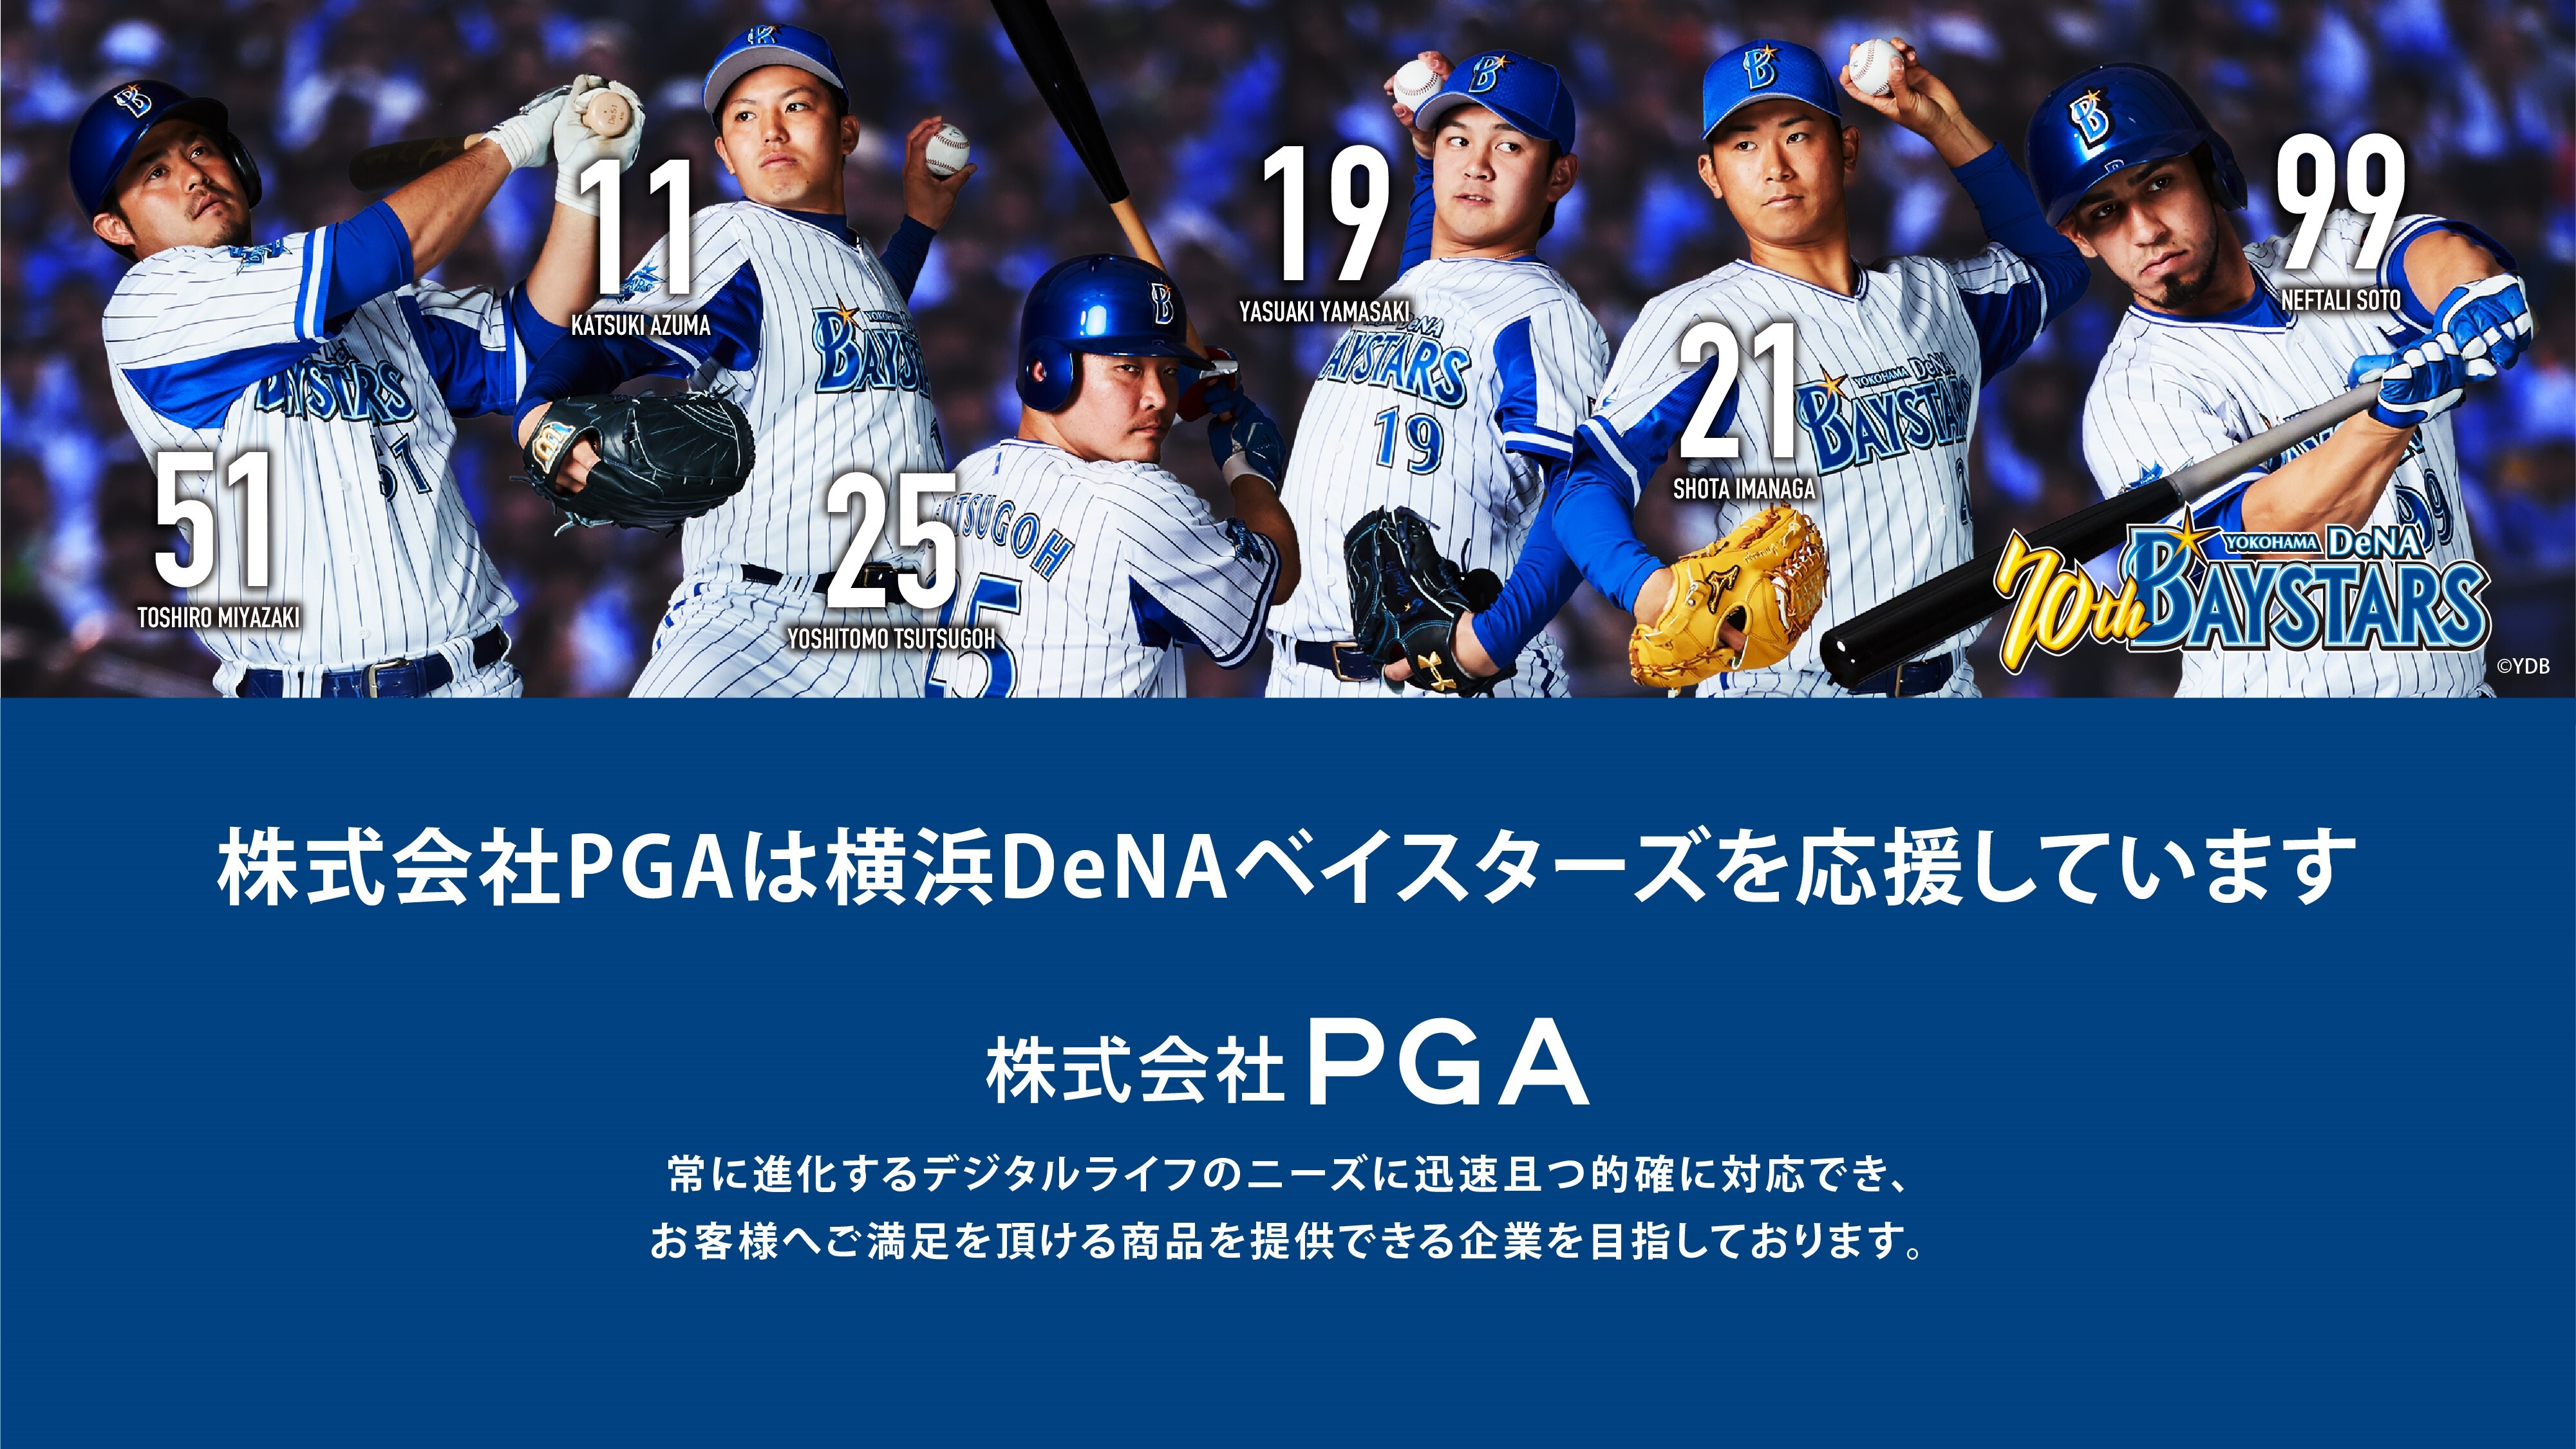 株式会社pga 横浜denaベイスターズ とスポンサー契約を締結 株式会社pgaのプレスリリース